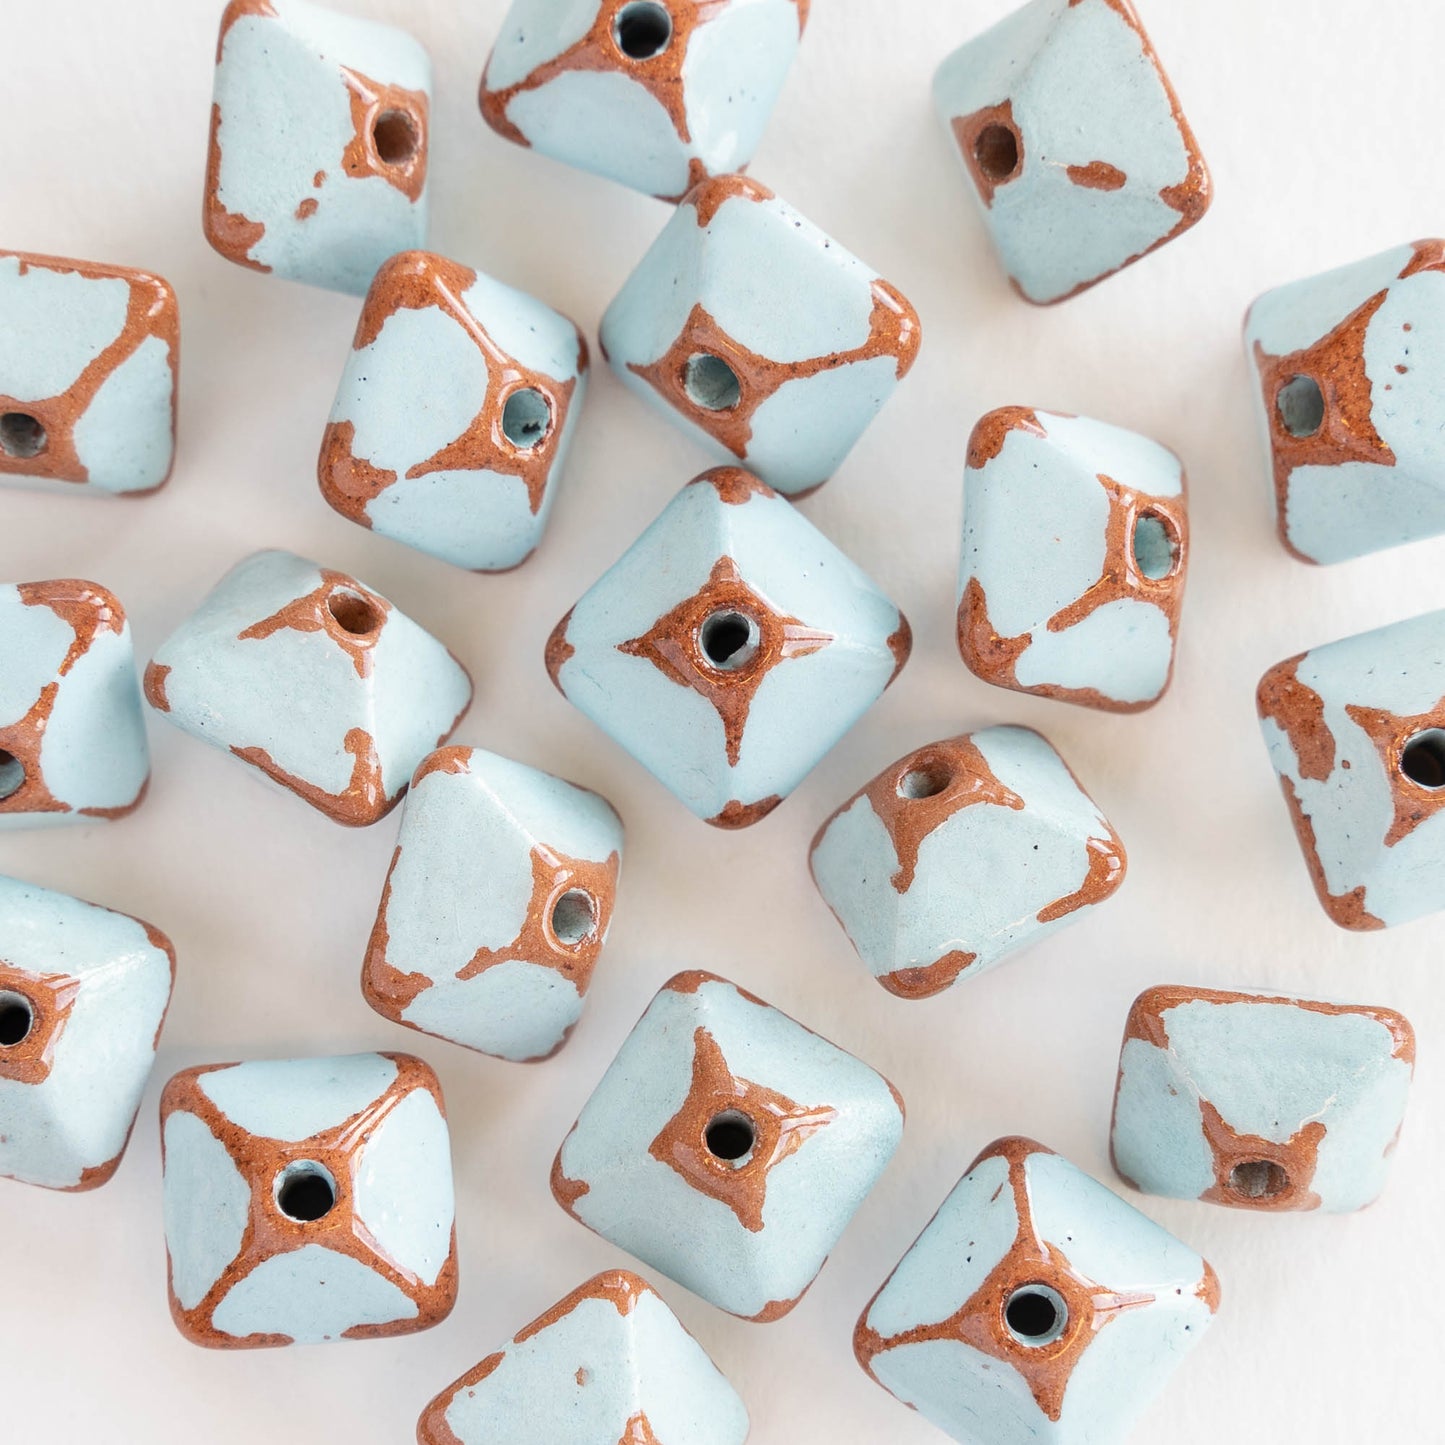 12x15mm Shiny Glazed Ceramic Octahedron Beads - Baby Blue - Choose Amount